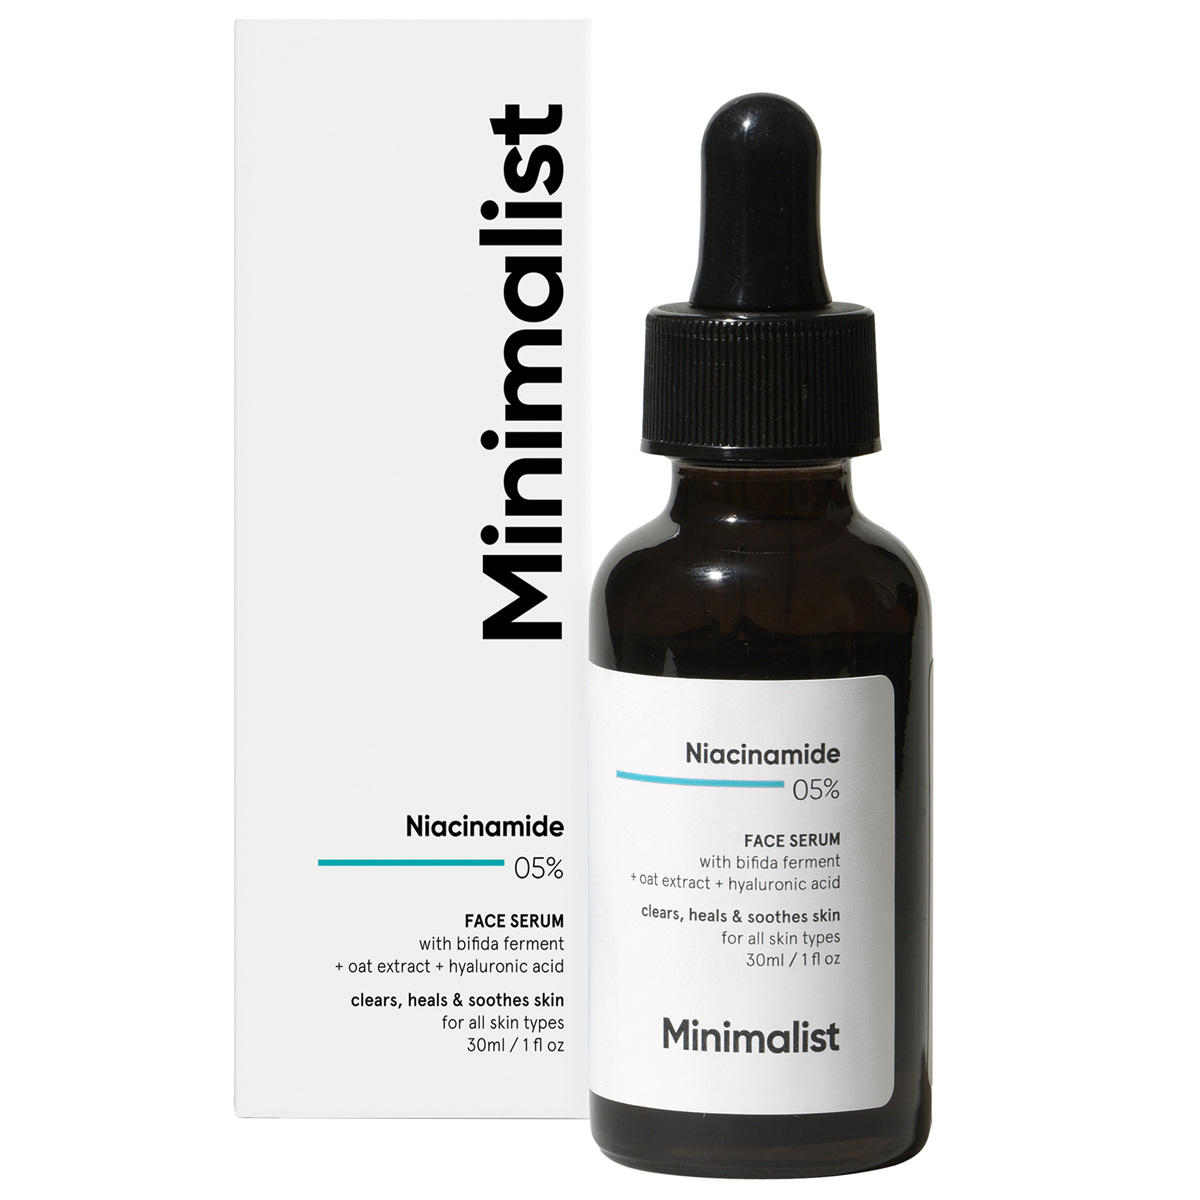 Minimalist Niacinamide 05% Face Serum 30 ml - 1